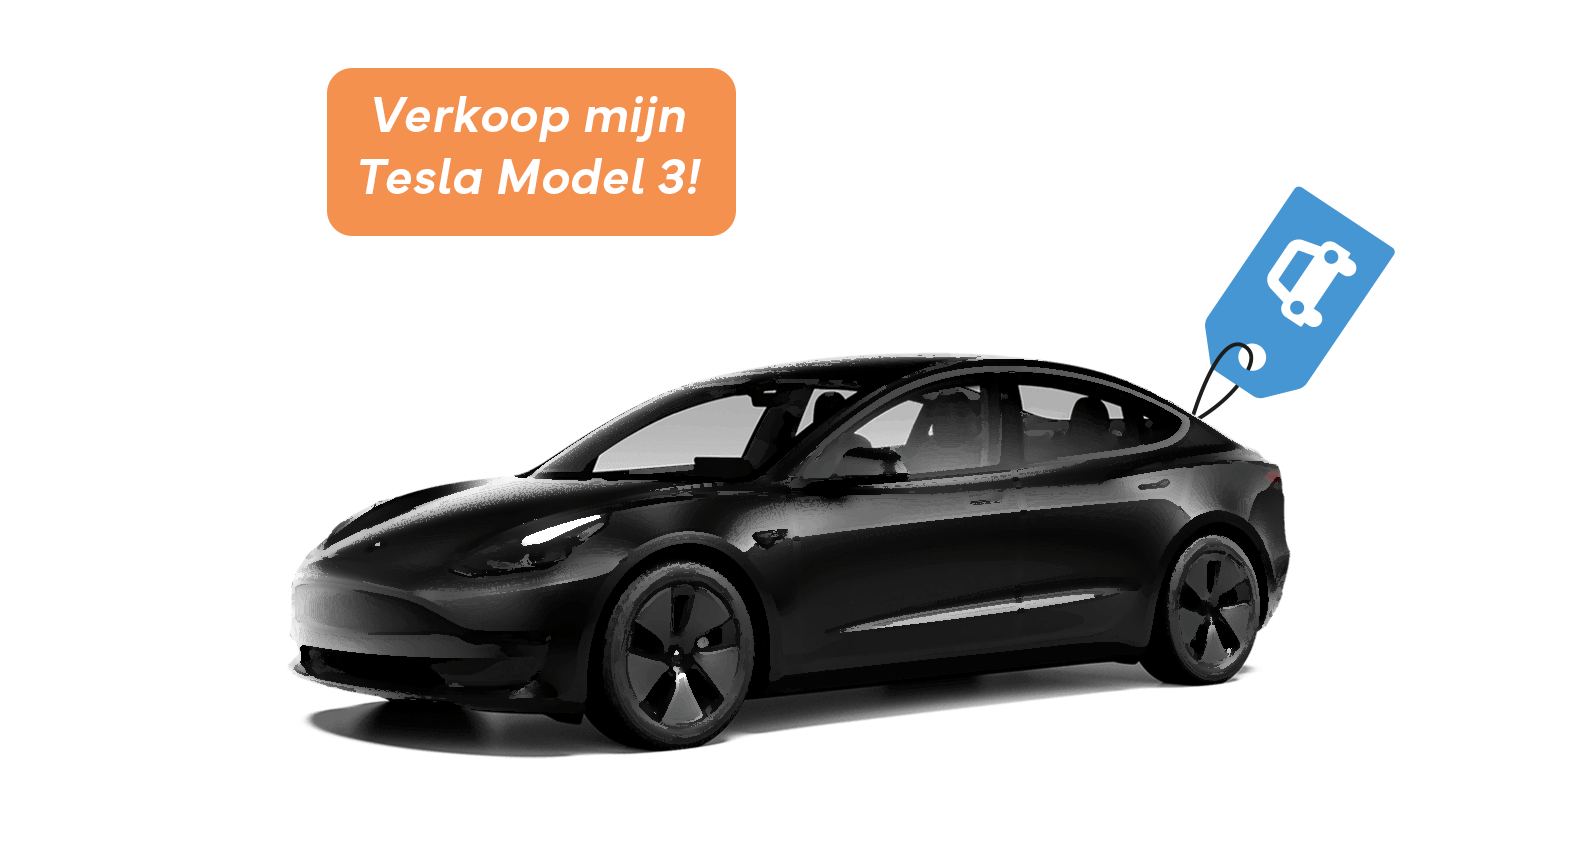 Vesting Vruchtbaar dreigen Verkoop uw Tesla Model 3 snel en voor een goede prijs bij Slimverkocht.nl!